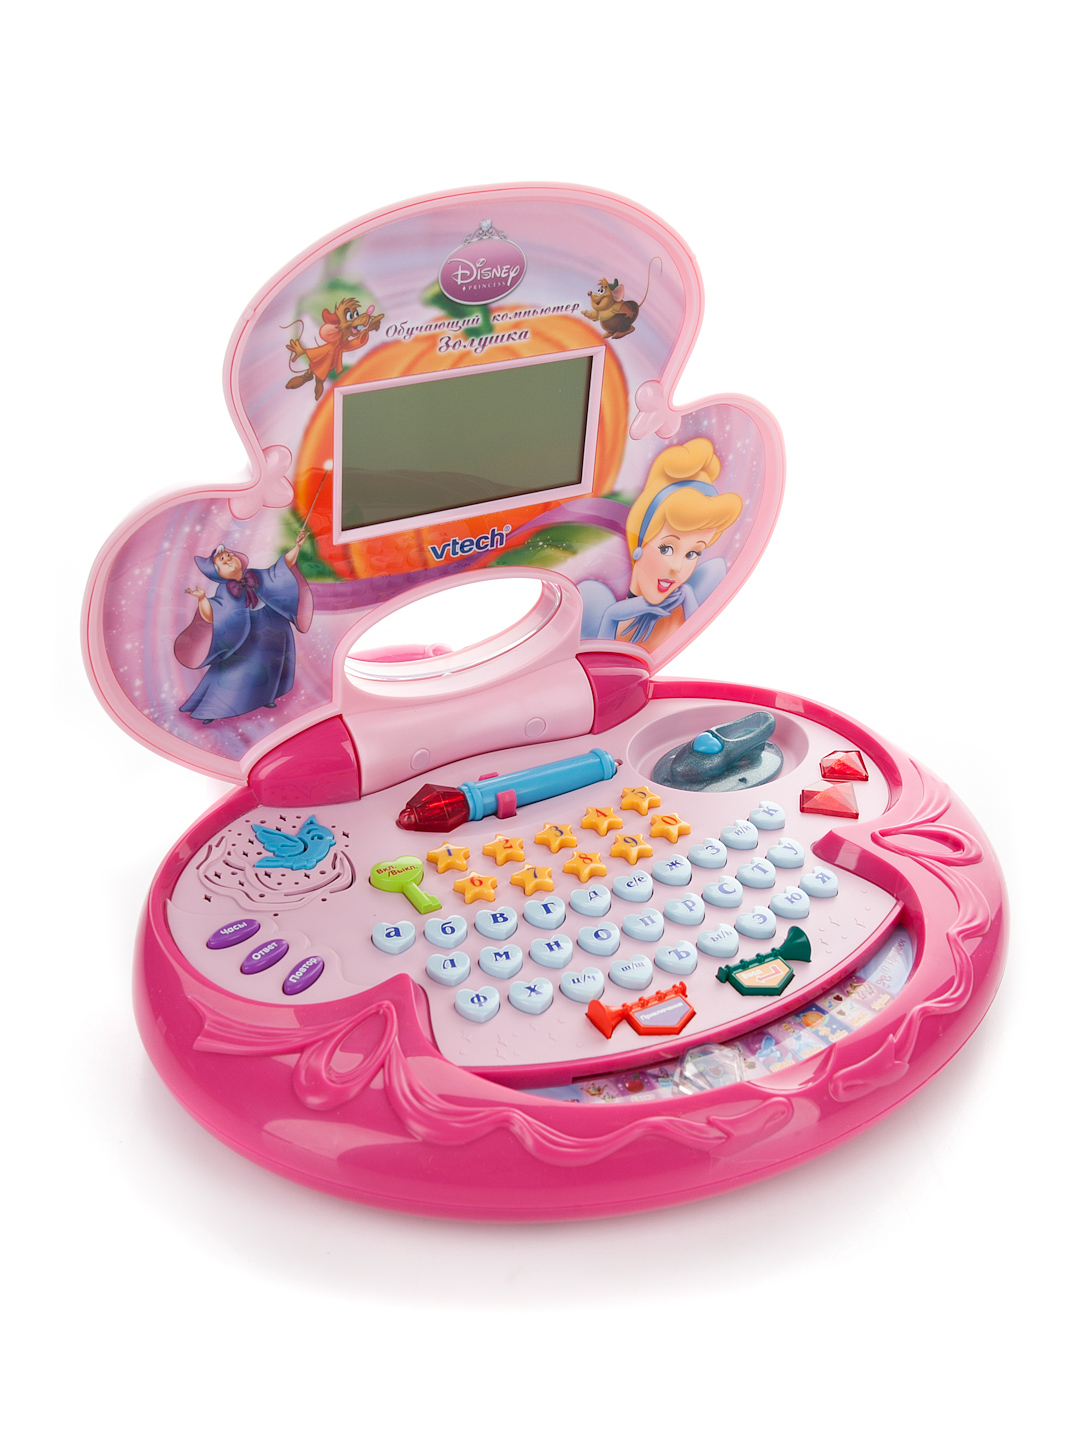 Компьютер для детей 3. Vtech компьютер. Детский компьютер. Детский компьютер обучающий. Детский игрушечный компьютер.